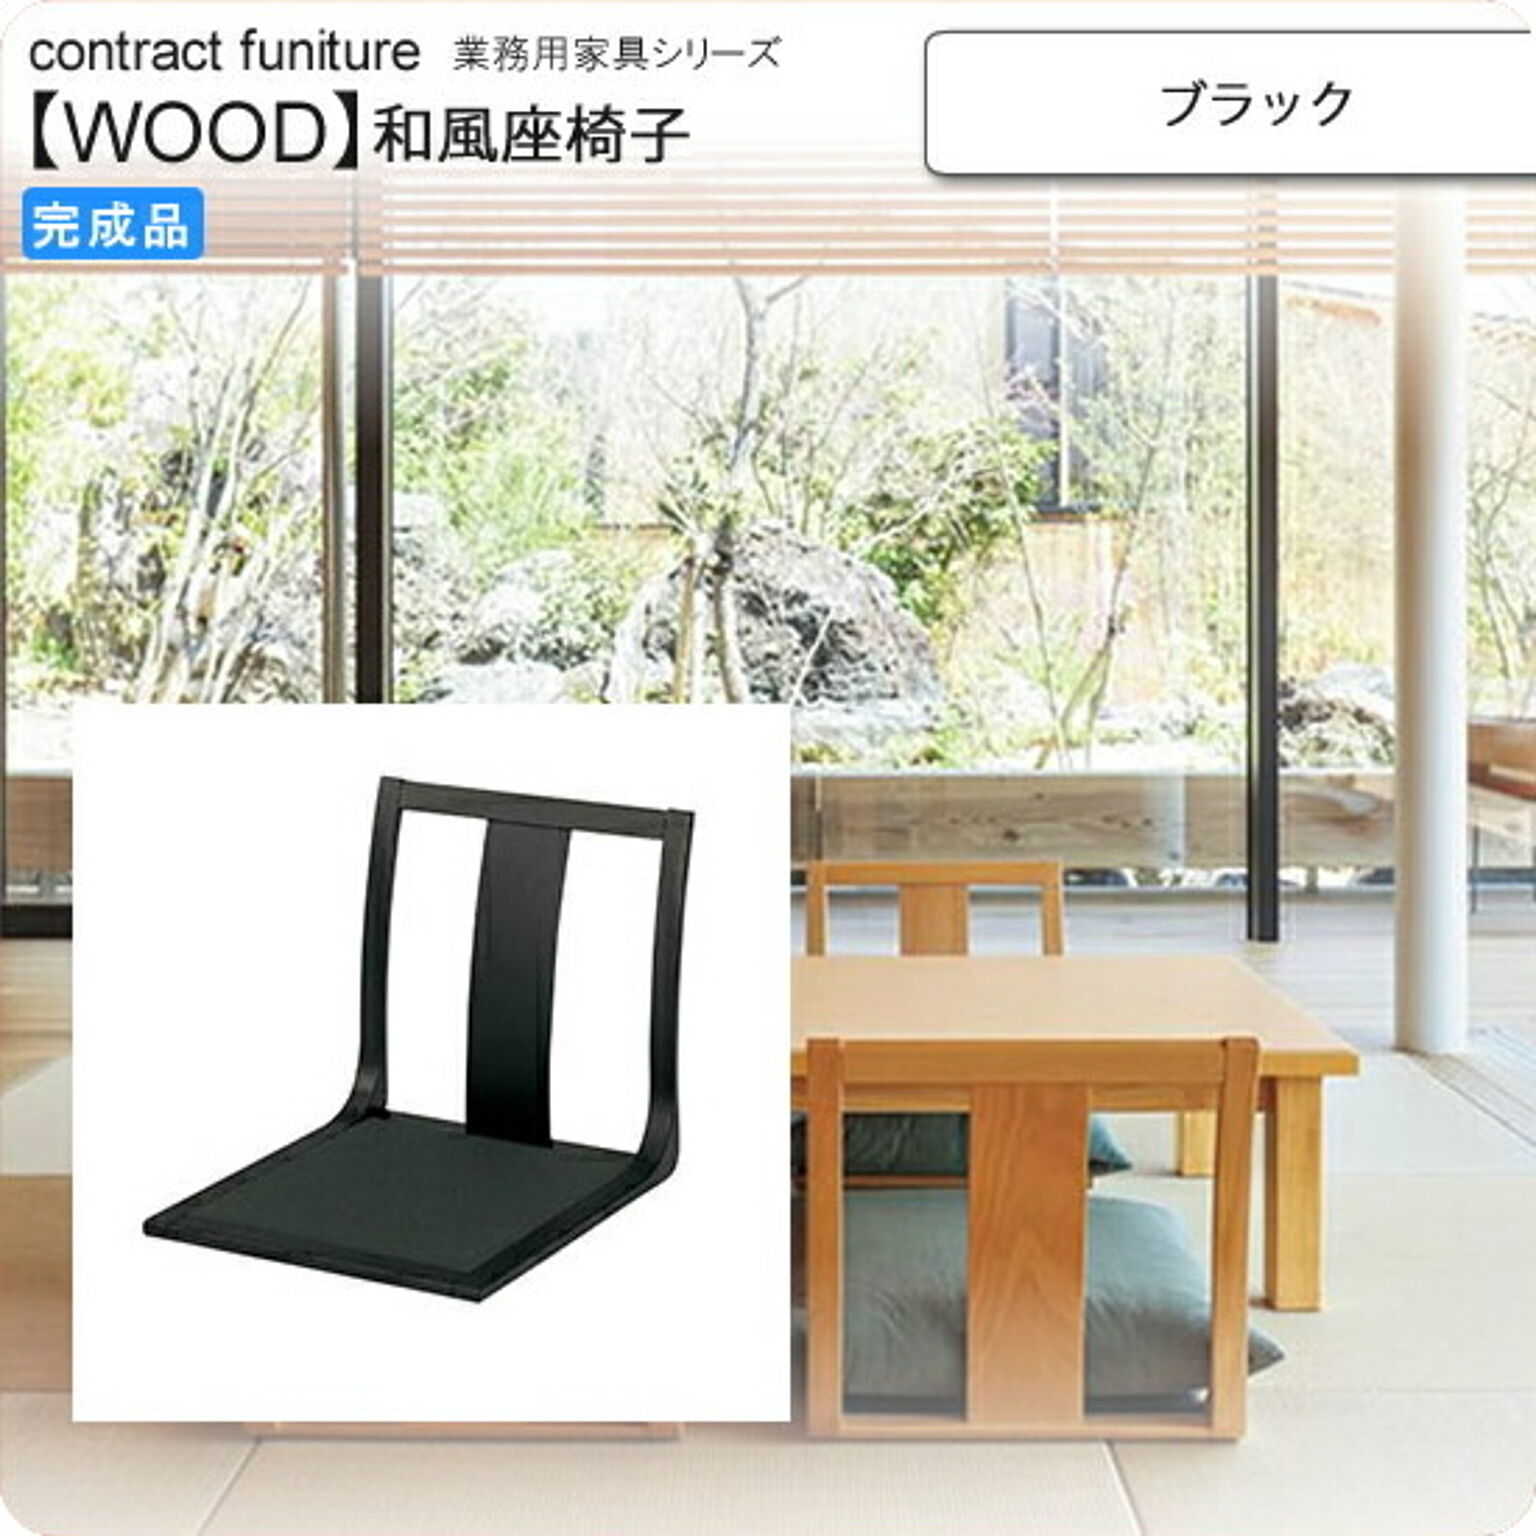 座椅子 ブラック 座椅子 業務用家具：wood japaneseシリーズ★ コーエ ブラック(black) (和風)